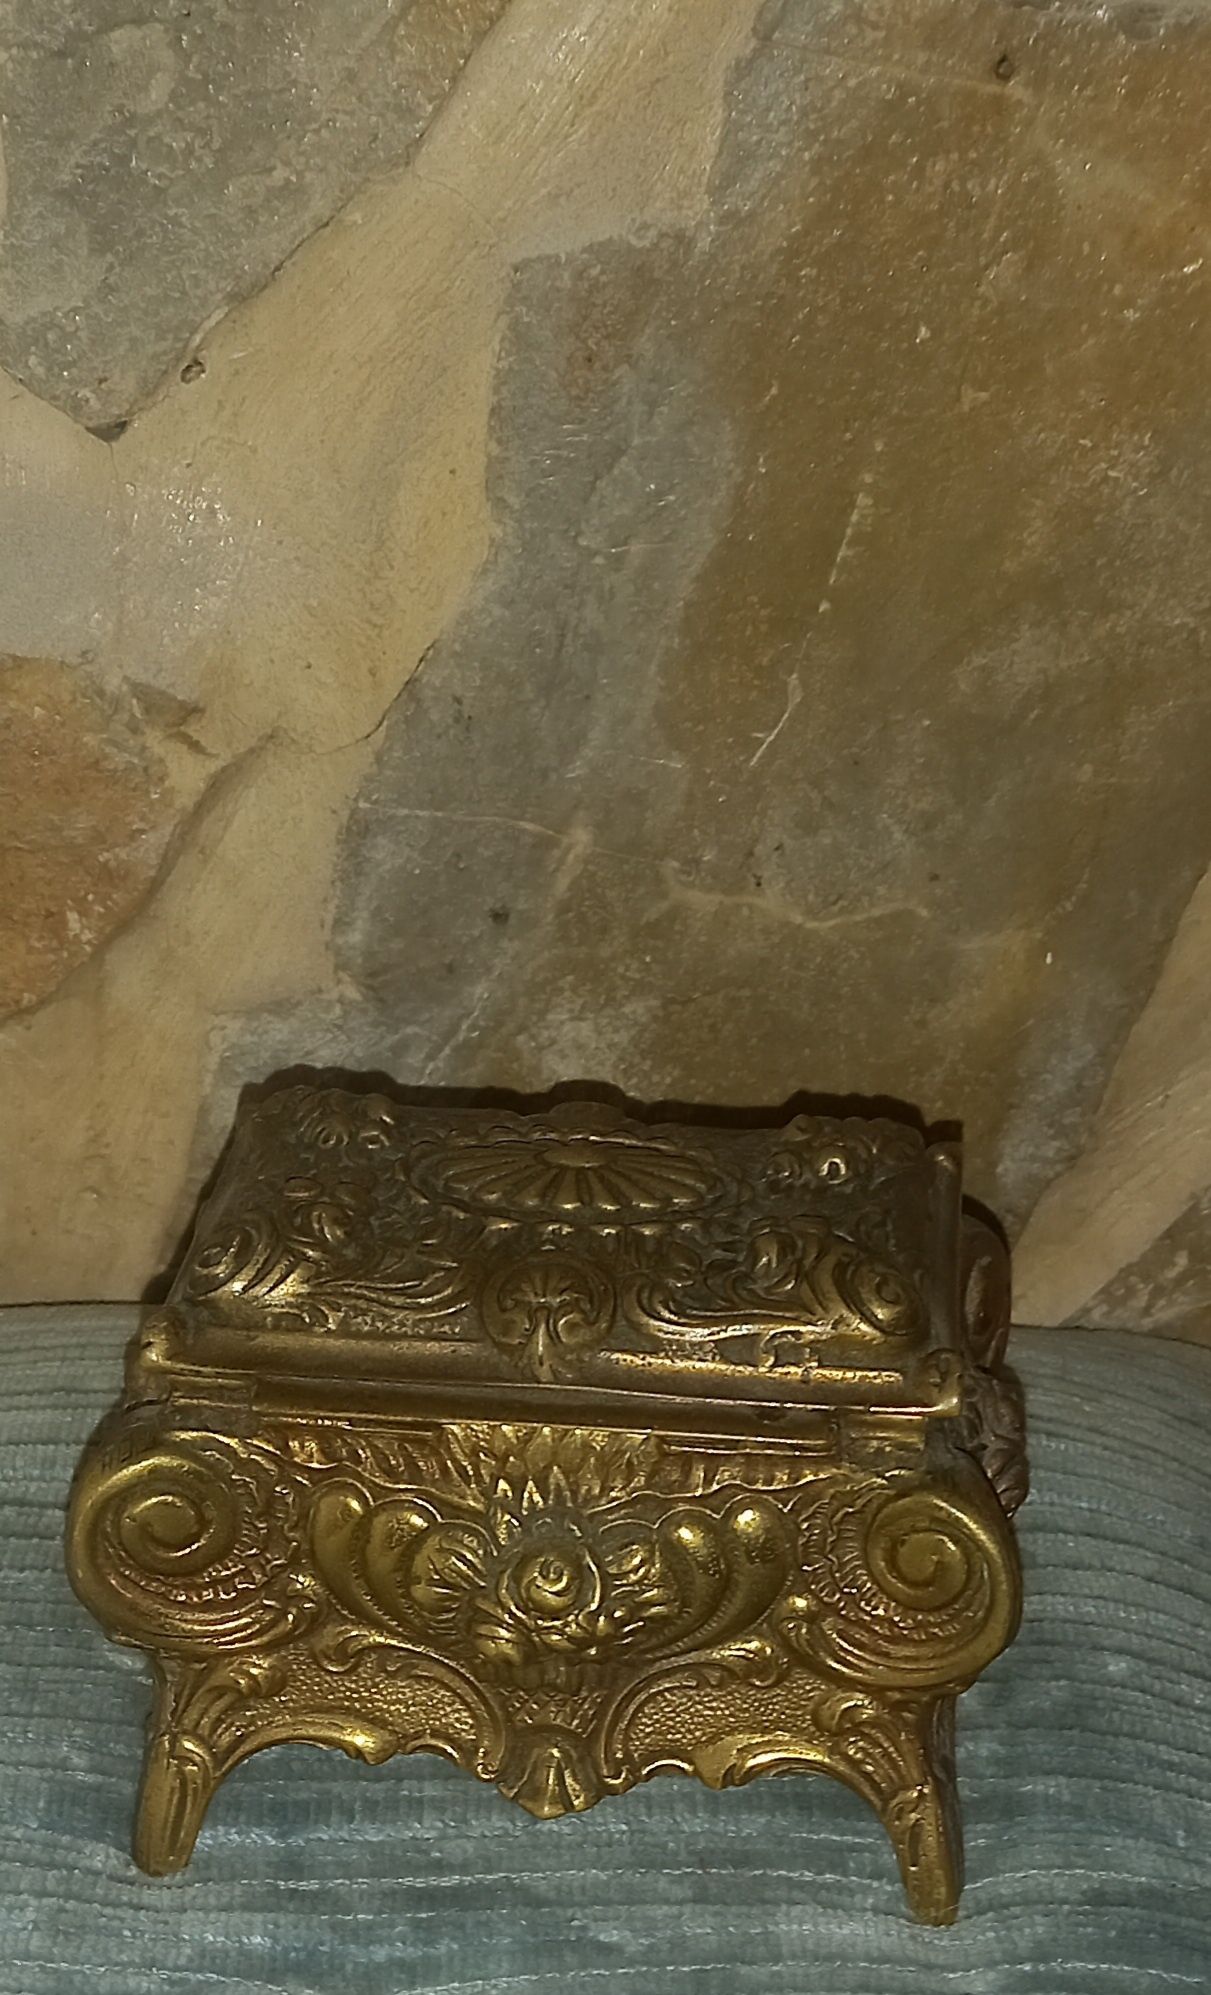 Guarda joias antigo em bronze peso 850g